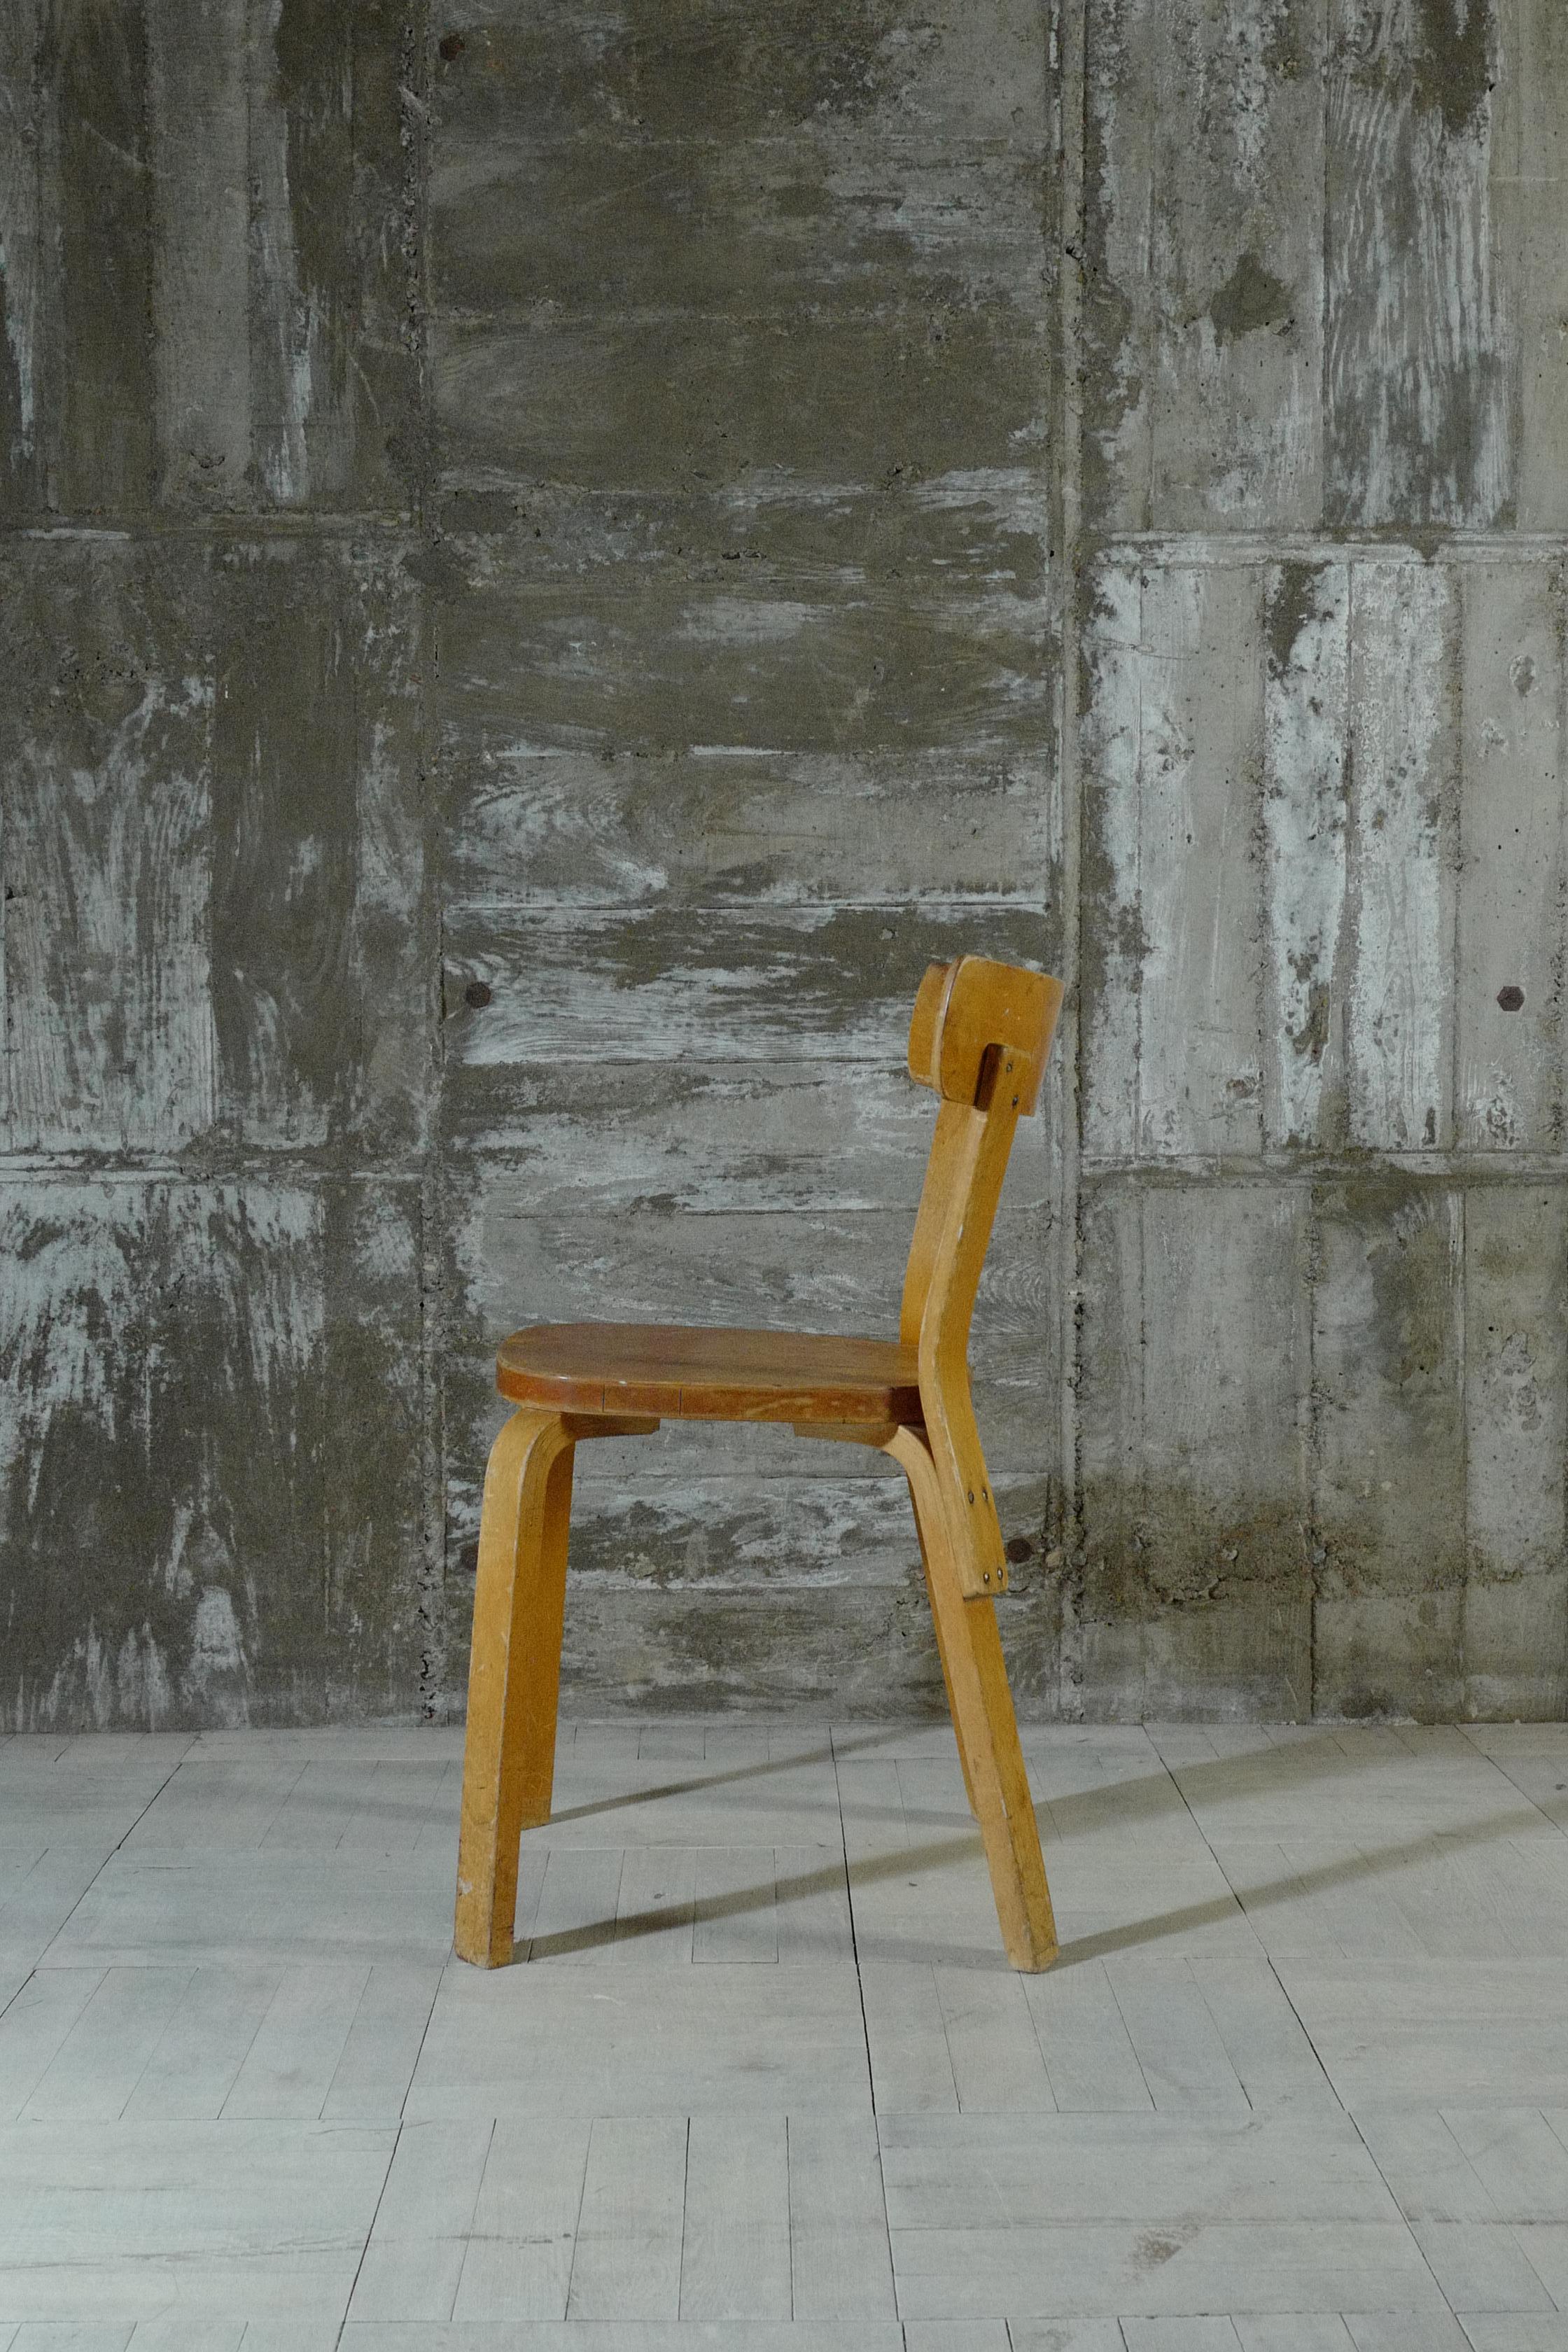 Conçu par Alvar Aalto.
Cette chaise 69 a été fabriquée dans les années 1940.
Il date de l'époque où il était fabriqué à Hedemora, en Suède.
Il possède une structure fabriquée avec de l'hedemora des années 1940, que l'on ne retrouve pas dans les